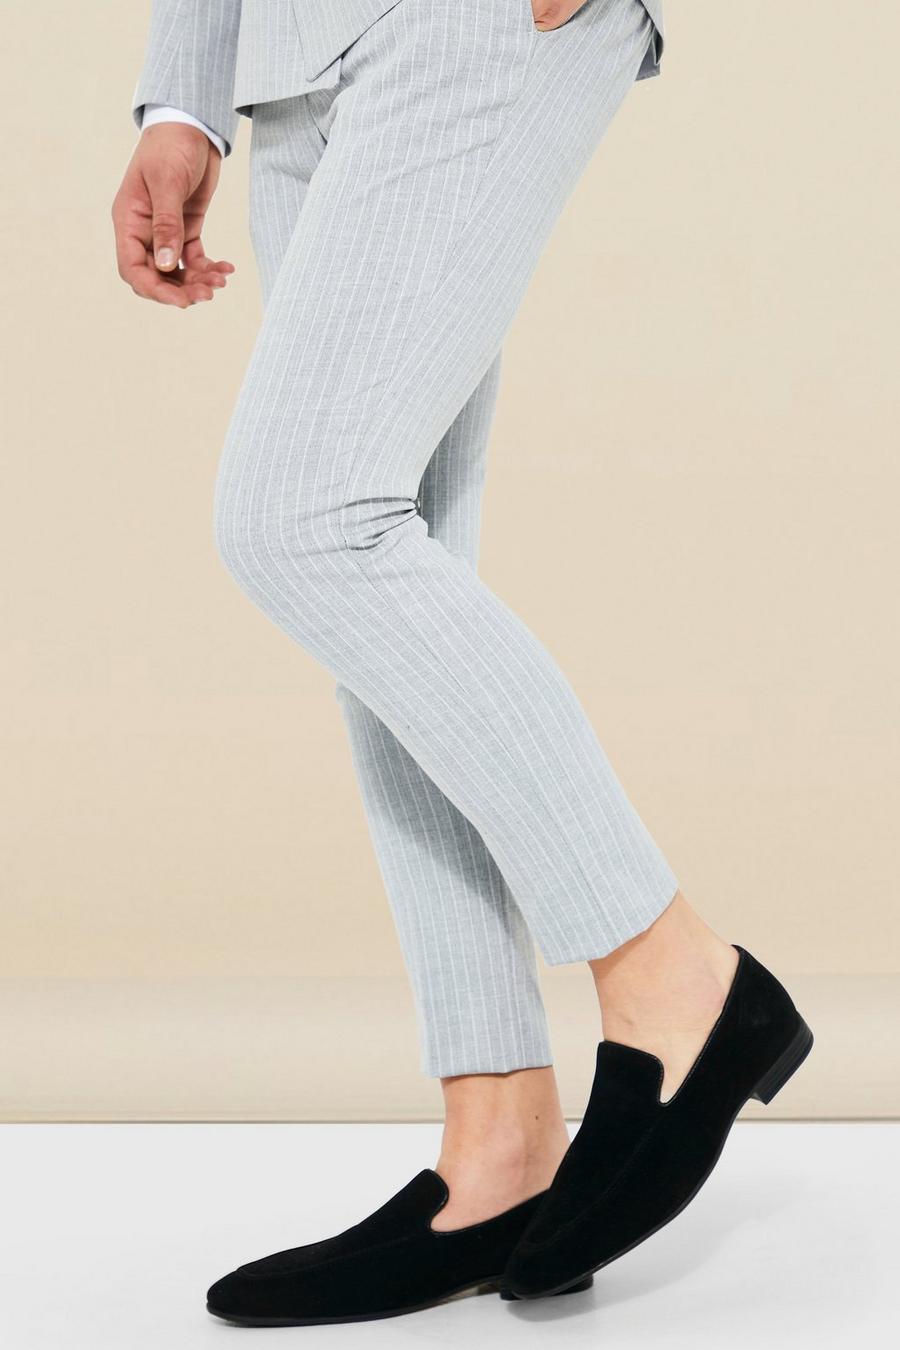 Pantaloni completo Super Skinny Fit a righe verticali, Light grey grigio